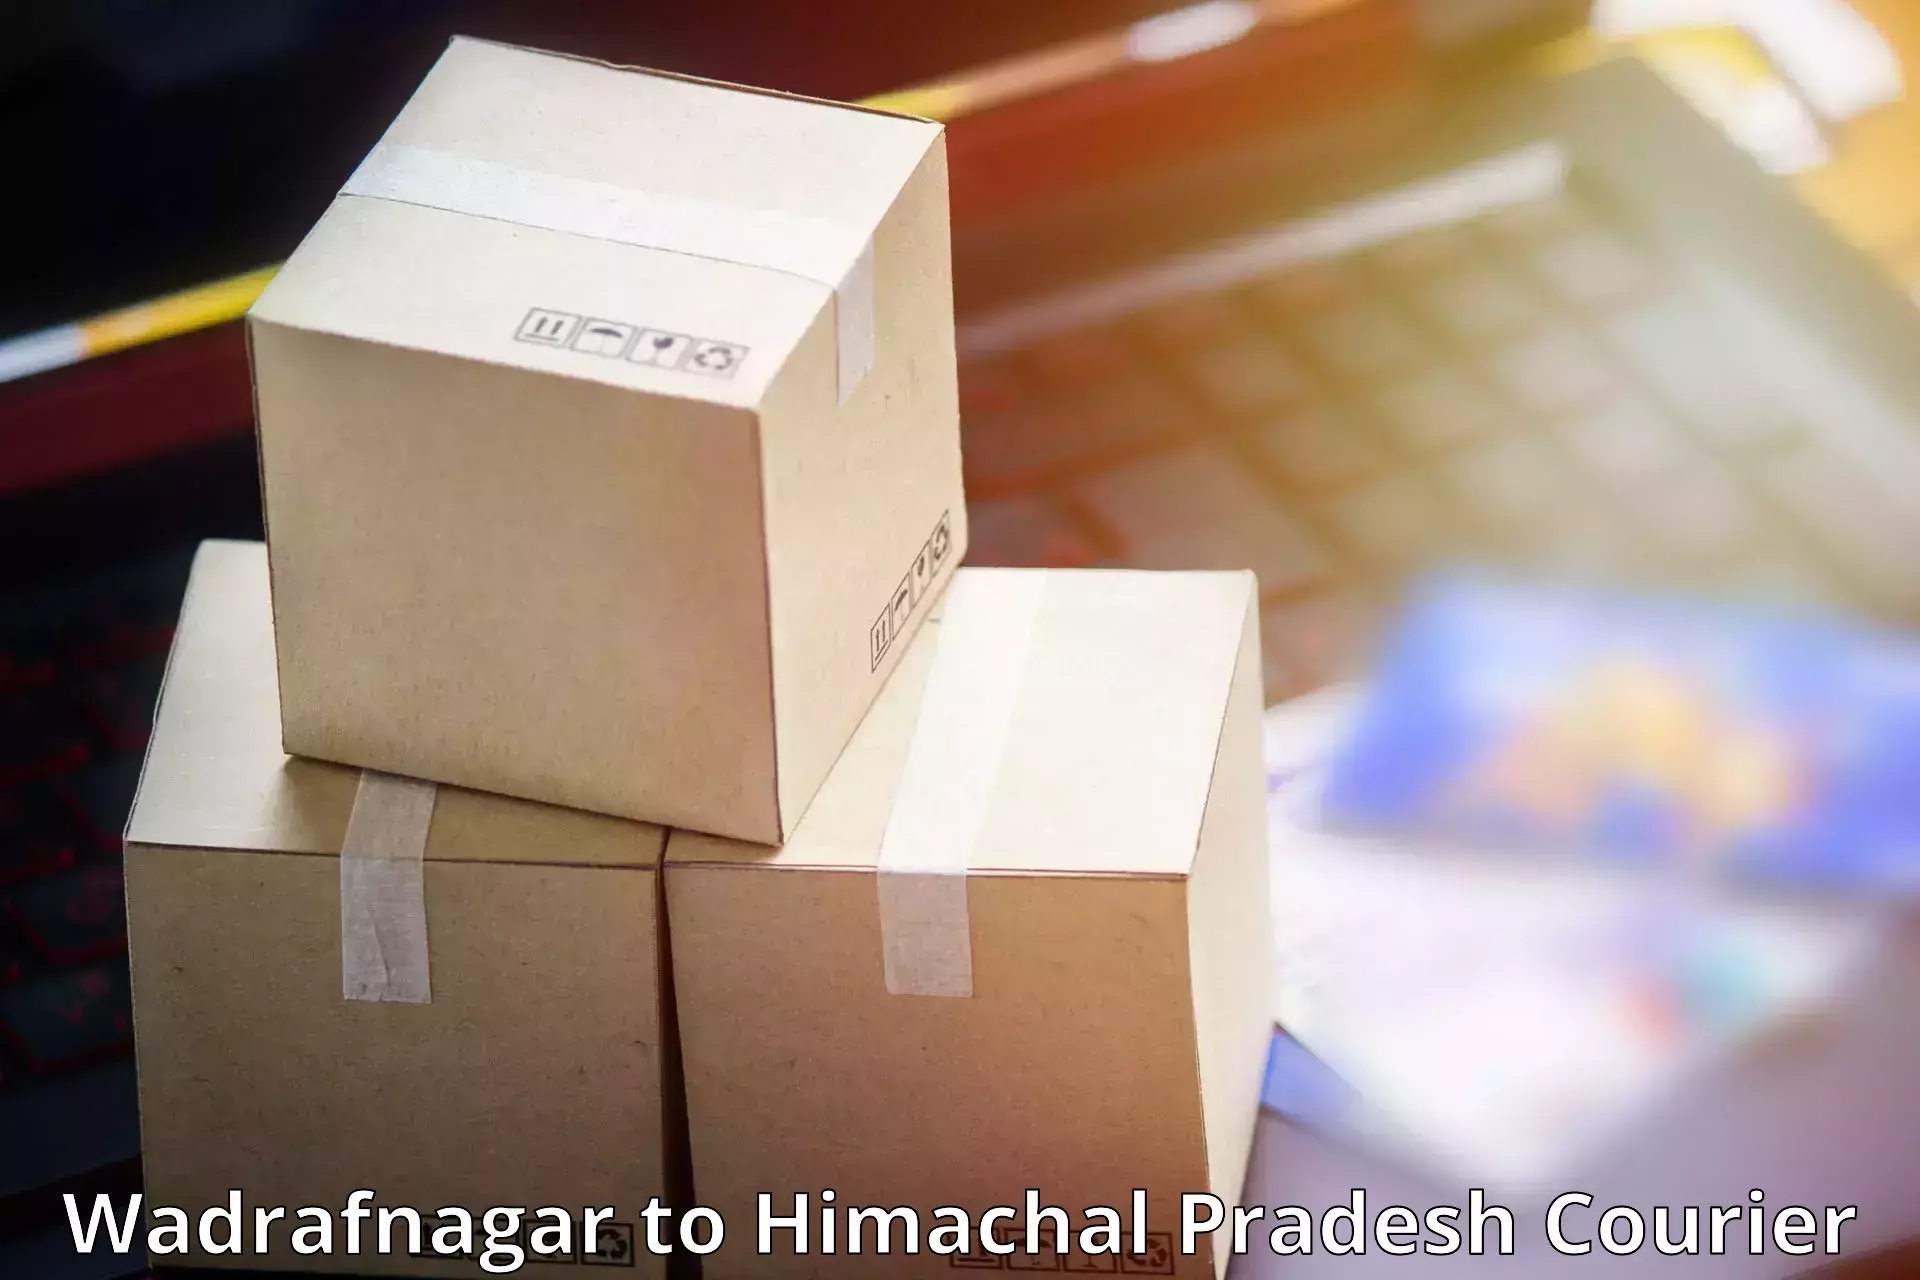 Tailored freight services Wadrafnagar to Una Himachal Pradesh